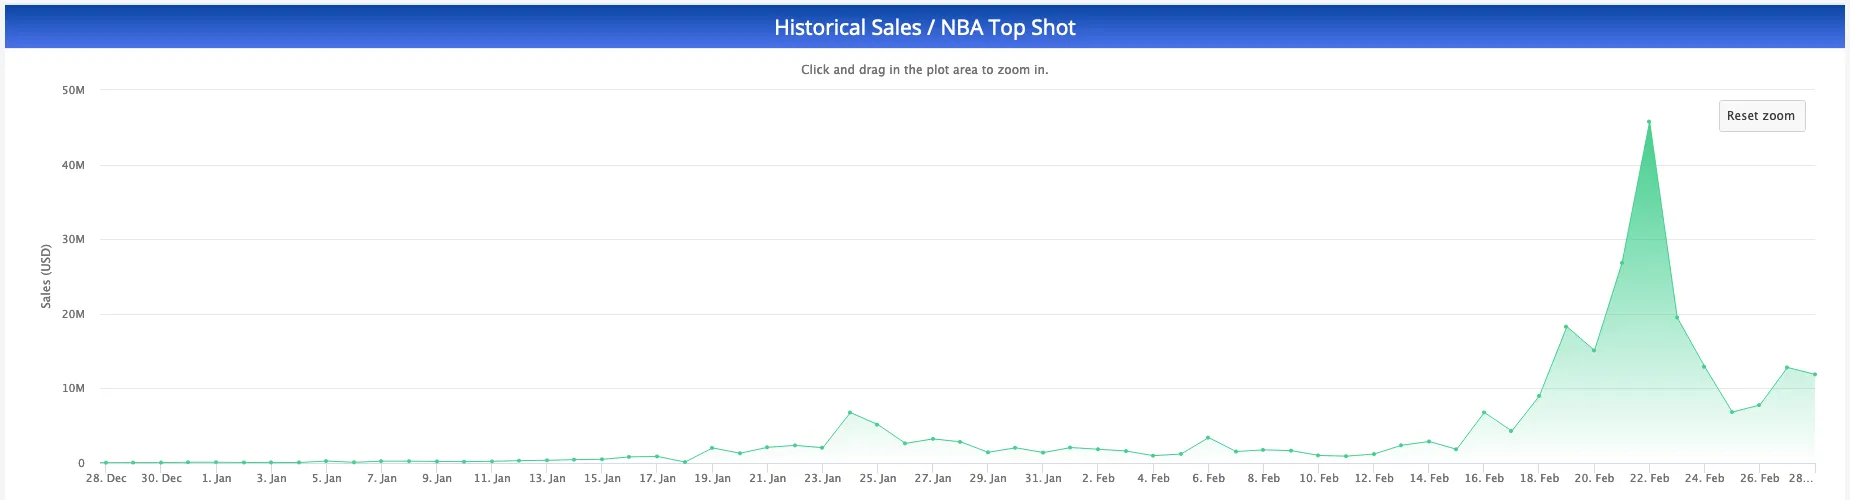 NBA Top Shot daily sales